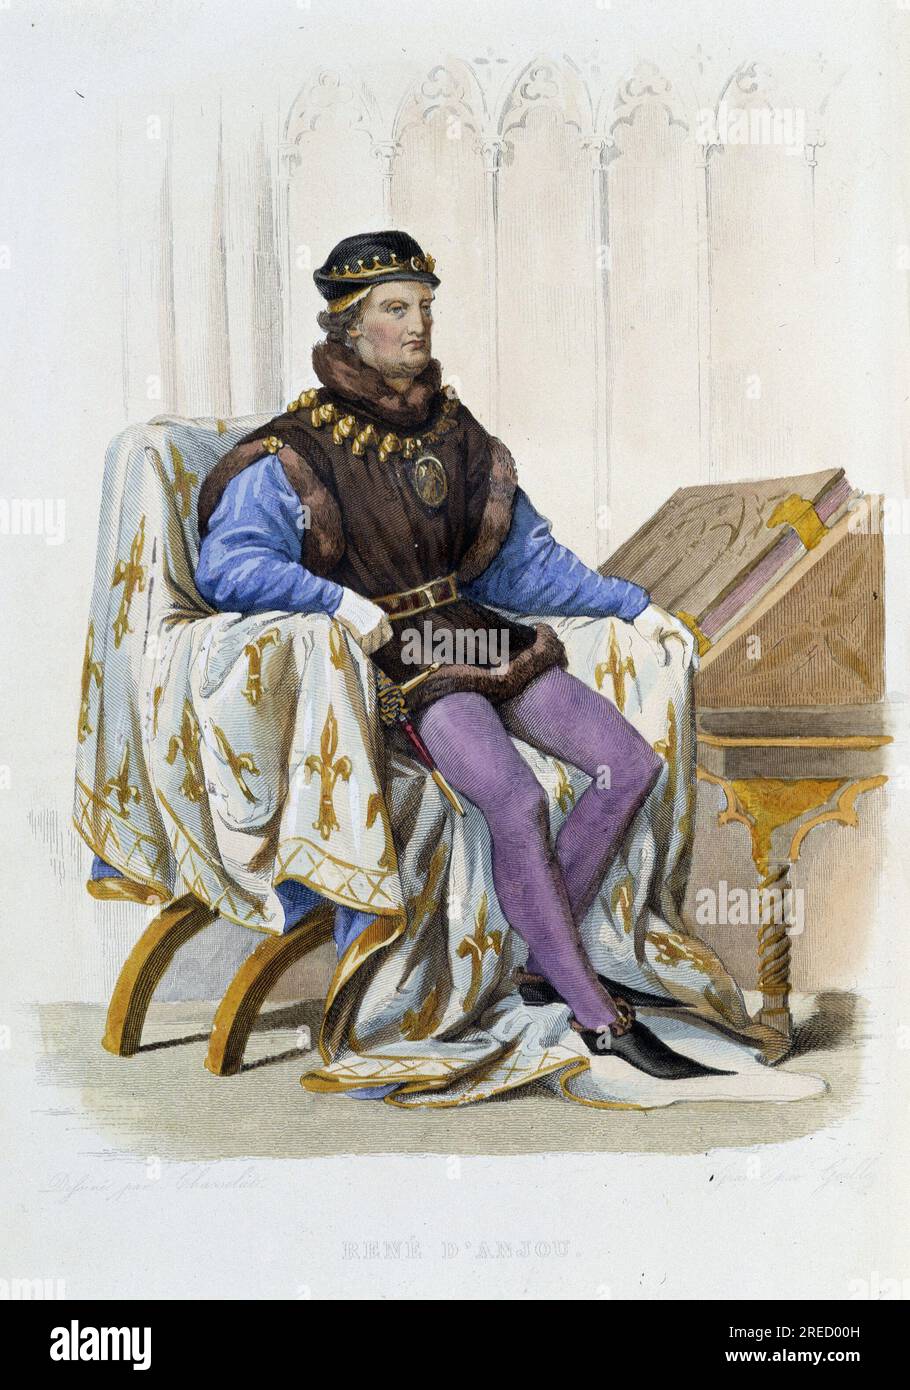 Portrait de roi Rene d'Anjou (1409-1480)' appele aussi Rene Ier de Naples ou encore Rene de Sicile - in 'Le Plutarque francais', Ed. Mennechet, 1844-47 Stock Photo